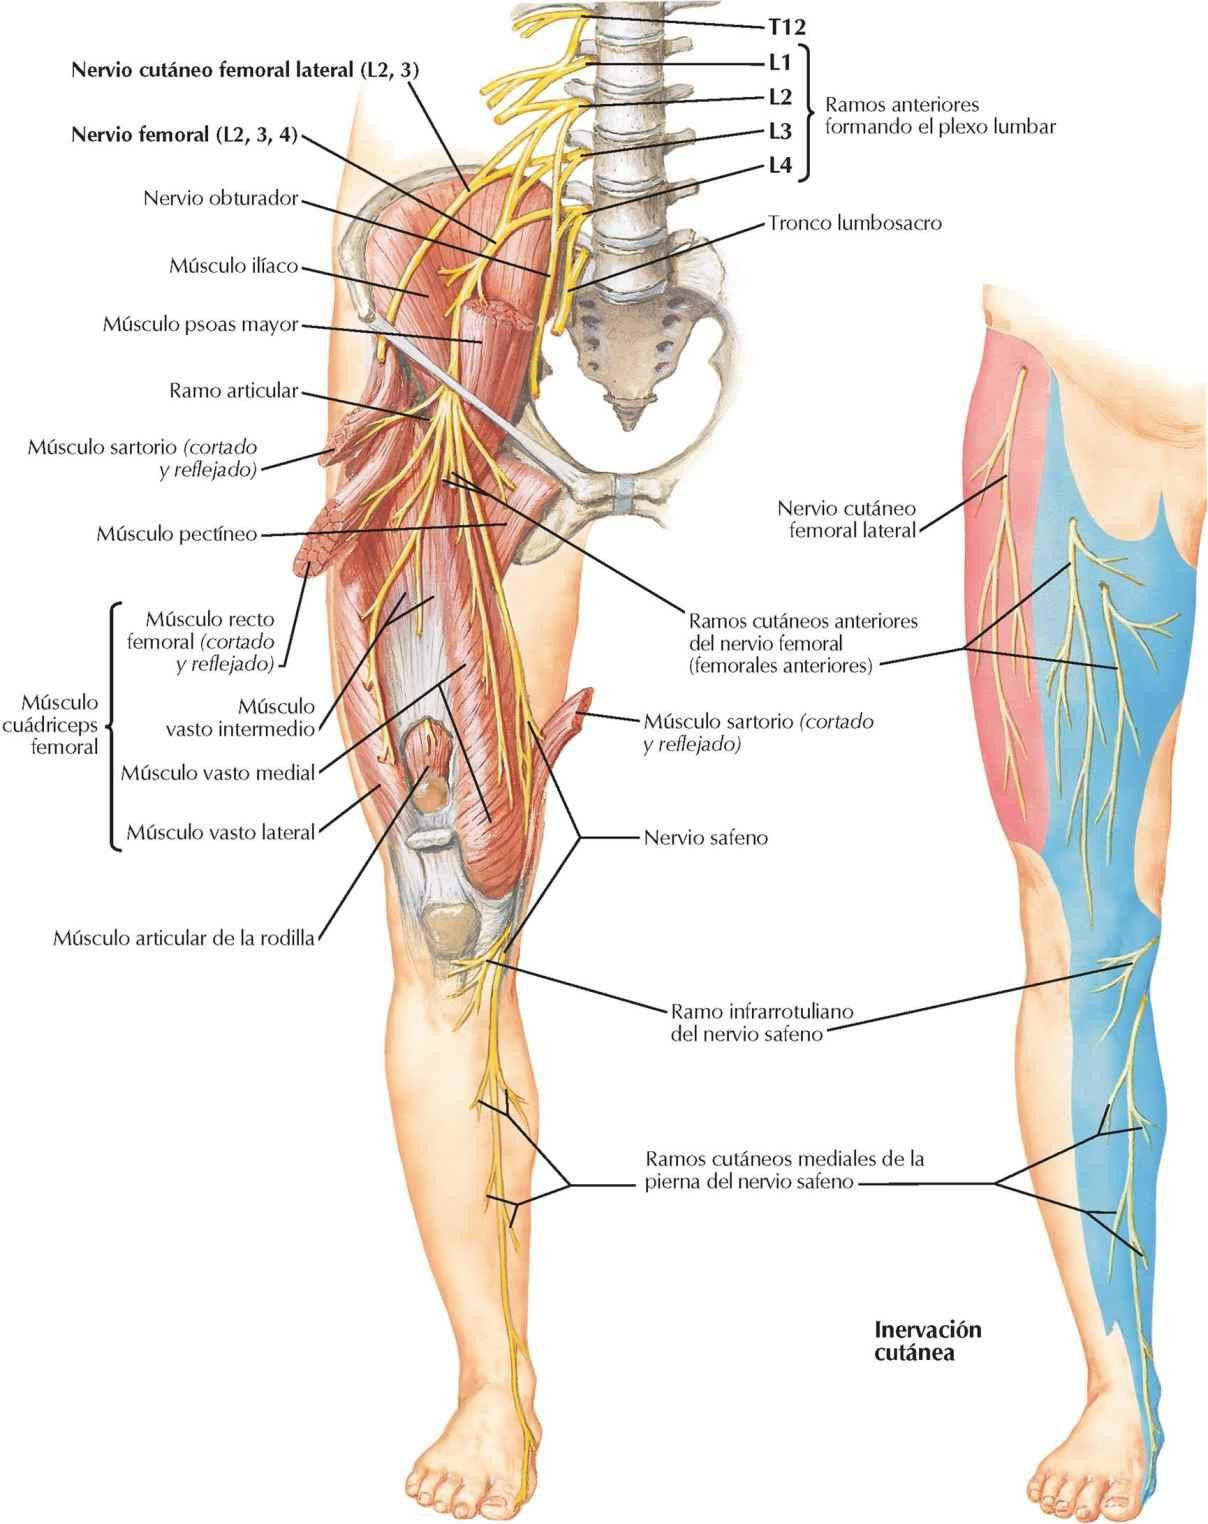 Nervios femoral y cutáneo femoral lateral